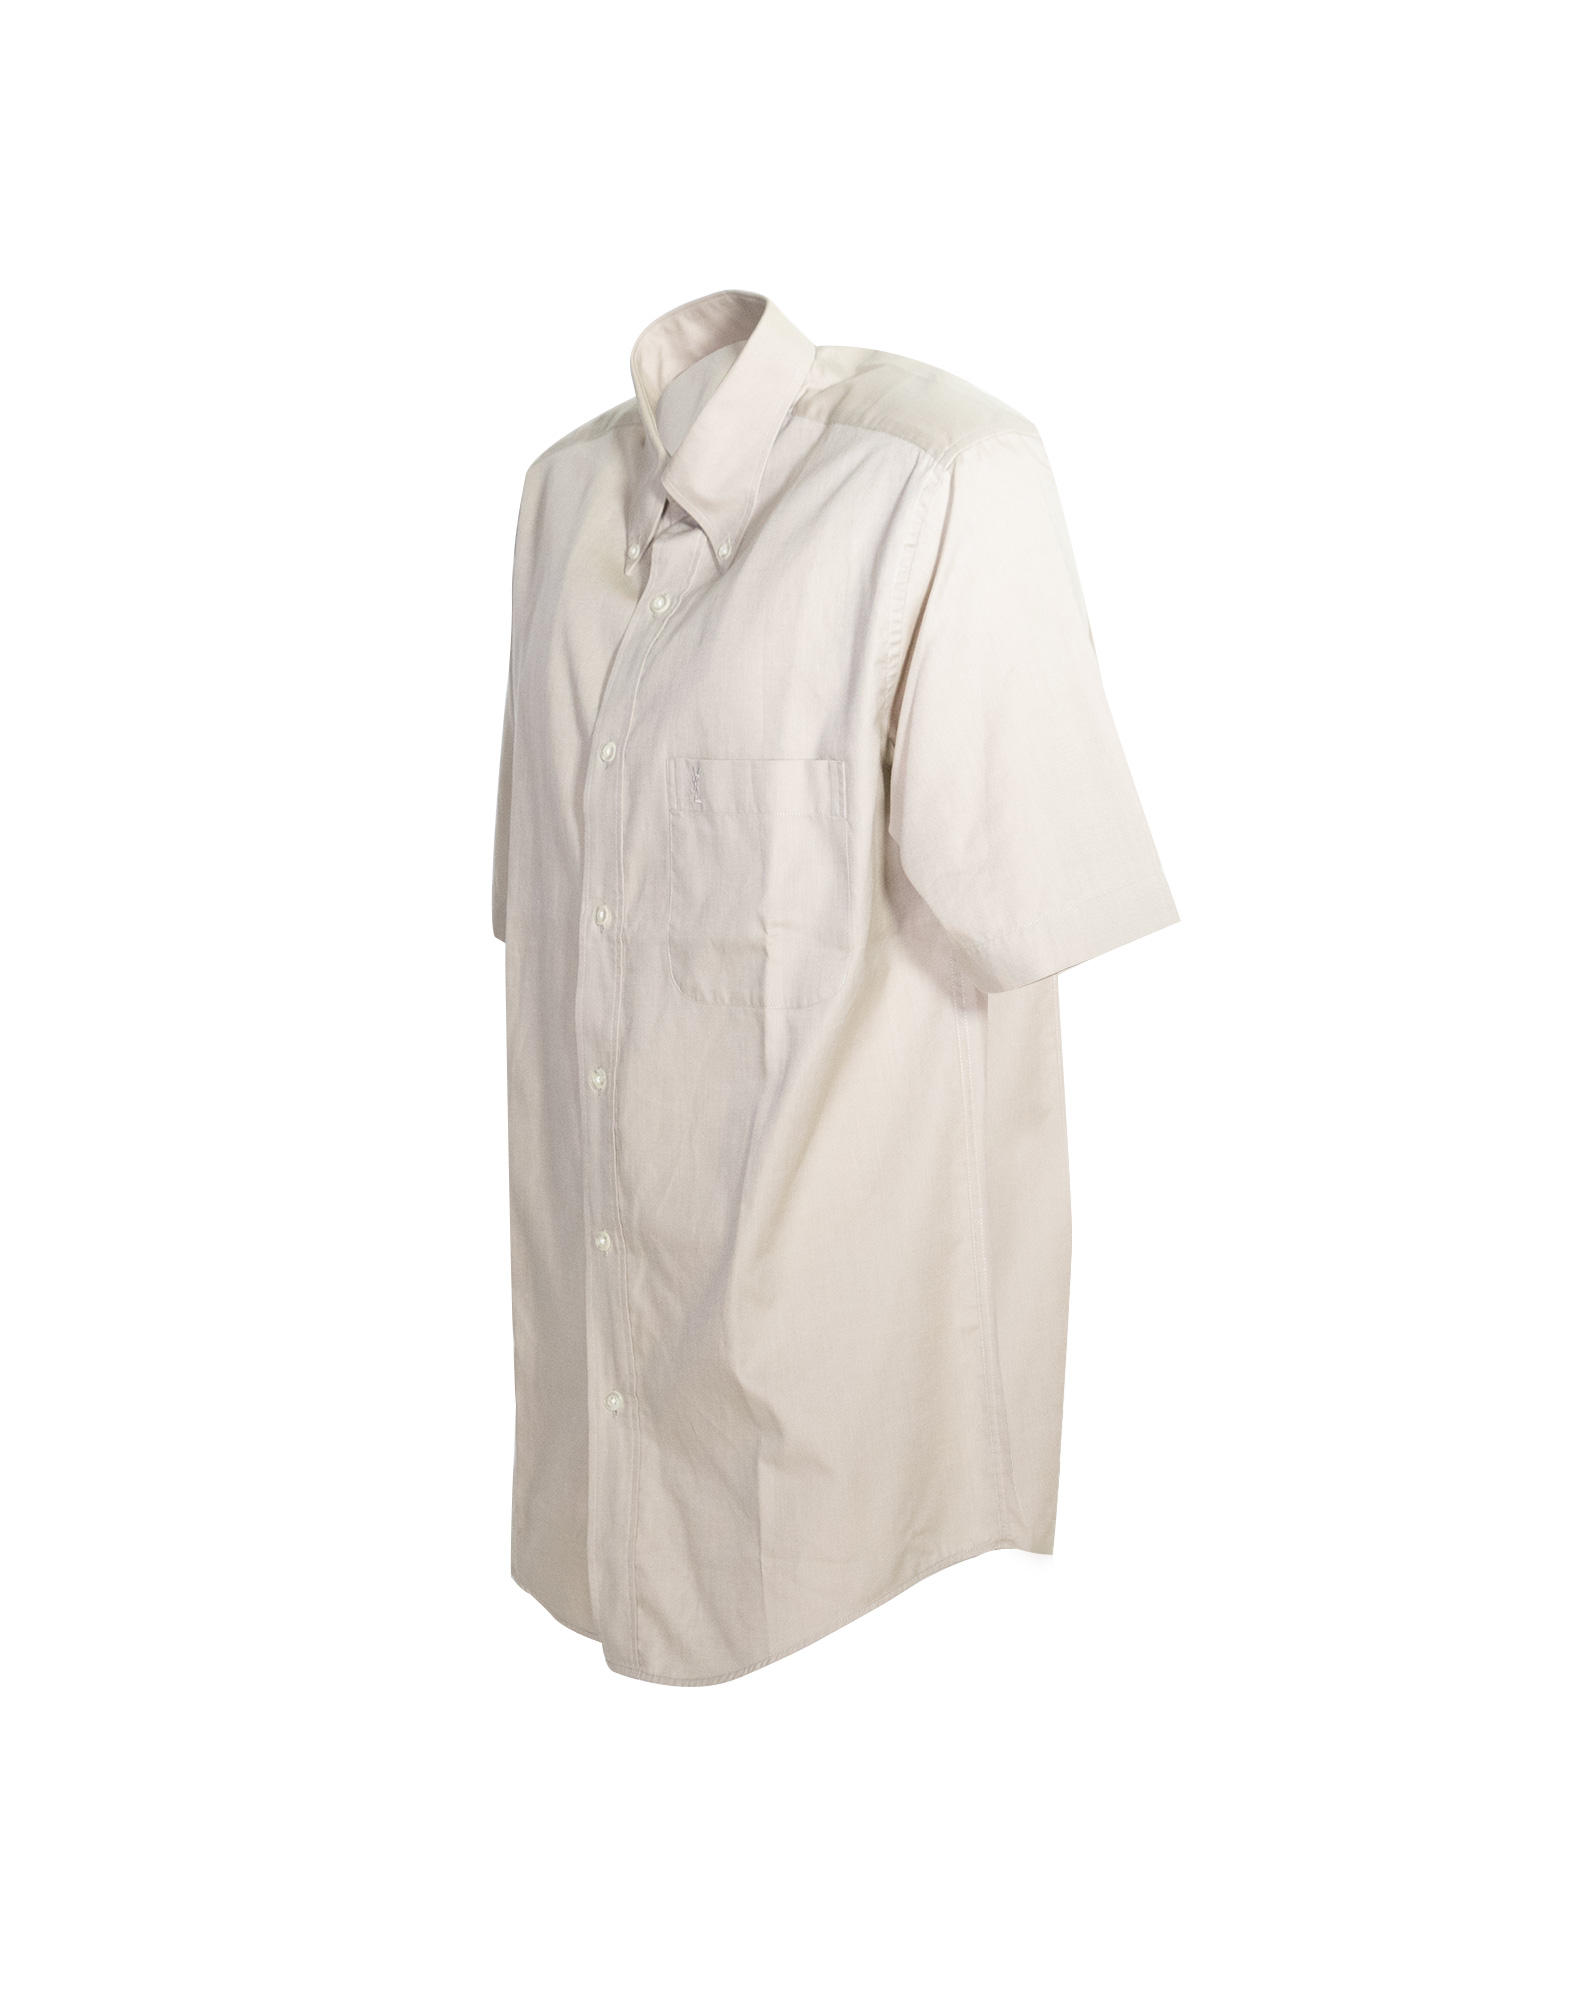 Yves Saint Laurent - 100% Cotton plain shirt